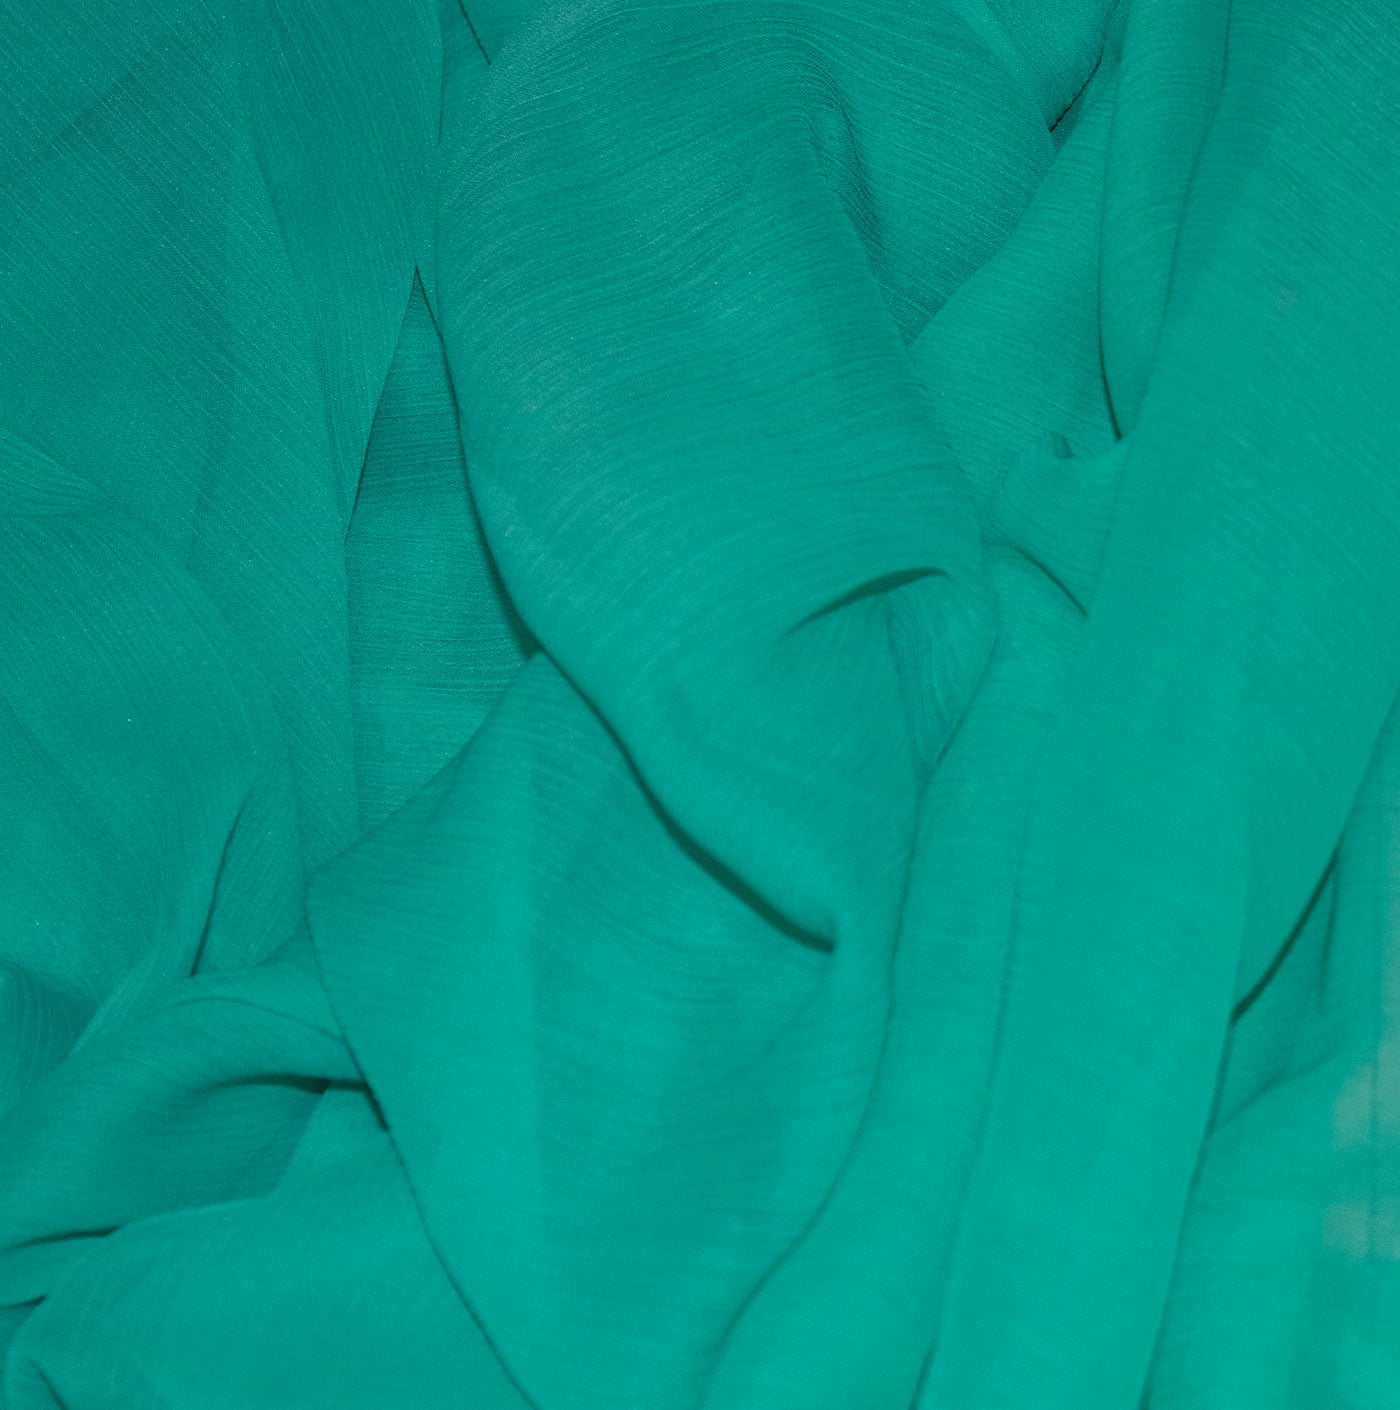 Teal Green Crinkle Chiffon Fabric